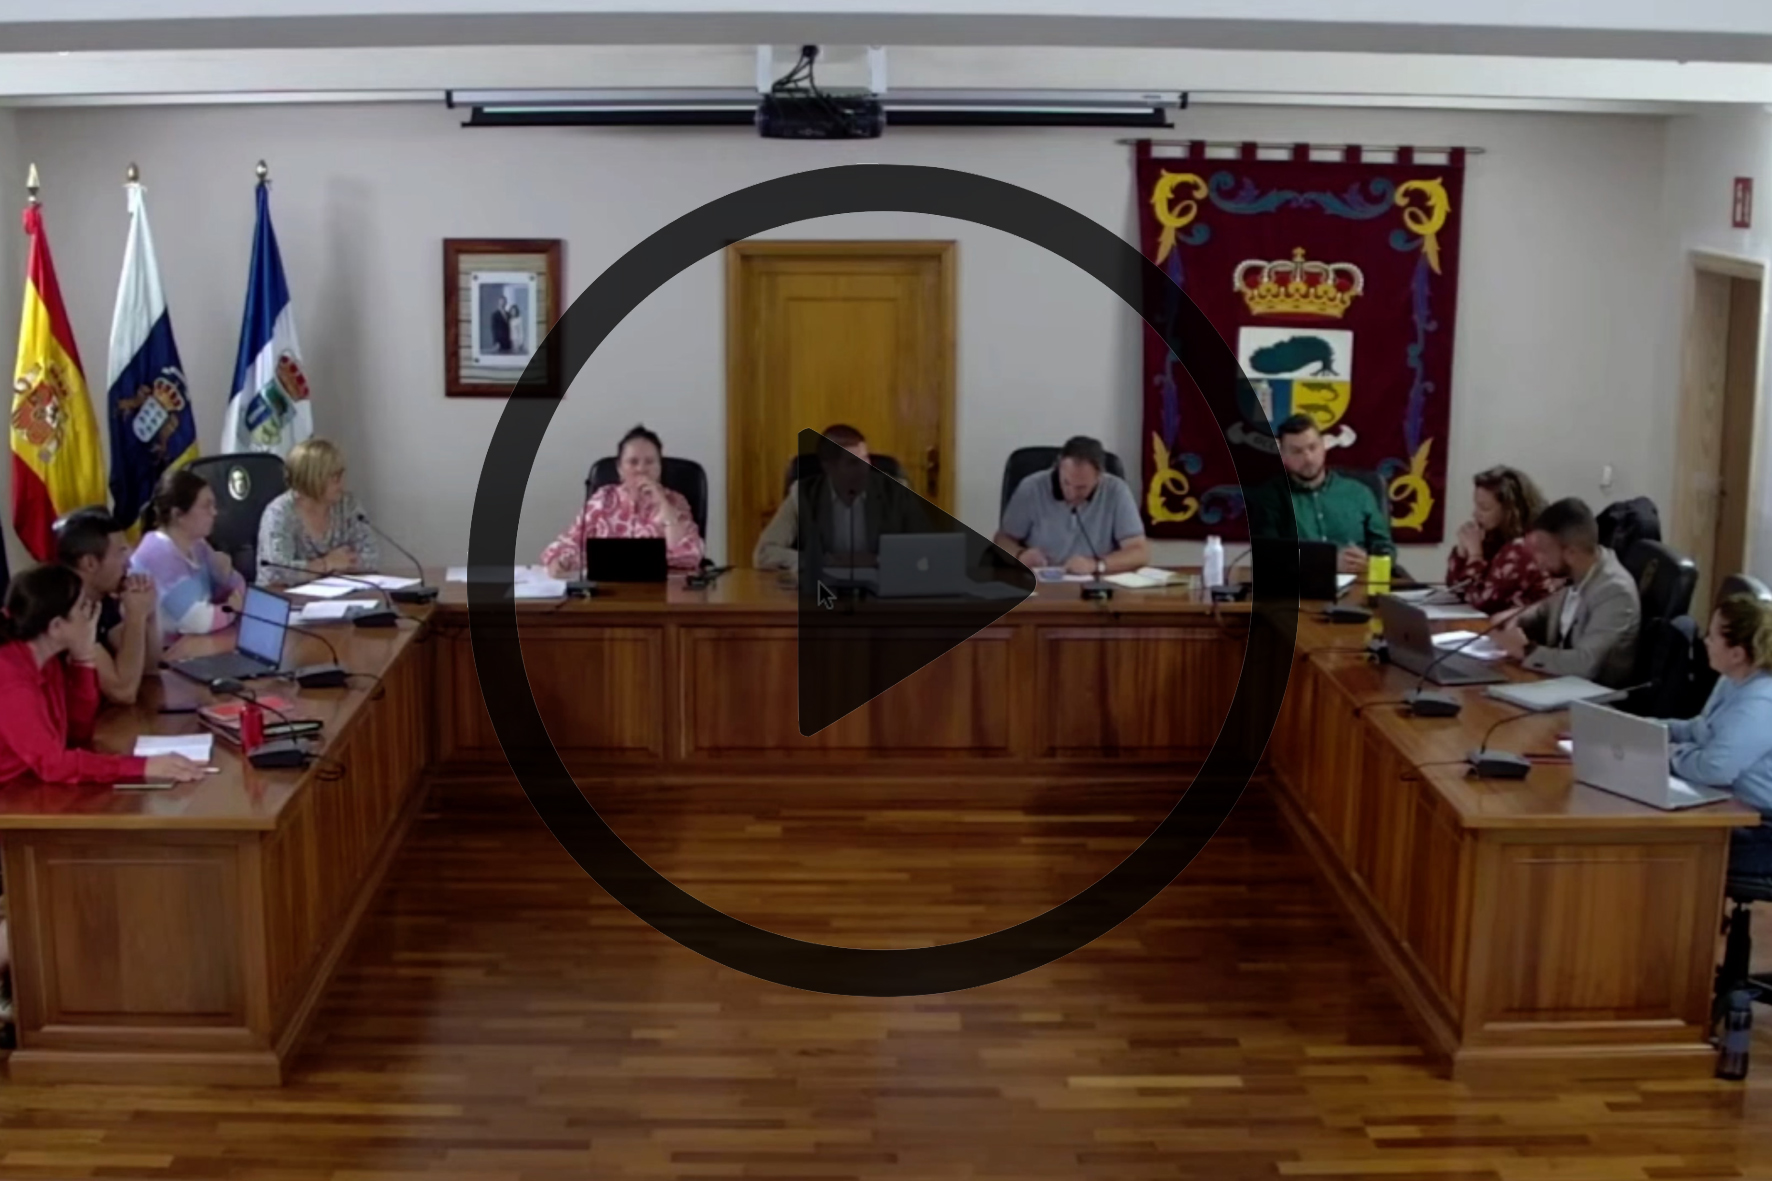 El concejal del PP en el Ayuntamiento de La Frontera abandona el Pleno una vez el Alcalde pidiera repetir la votación de uno de sus puntos